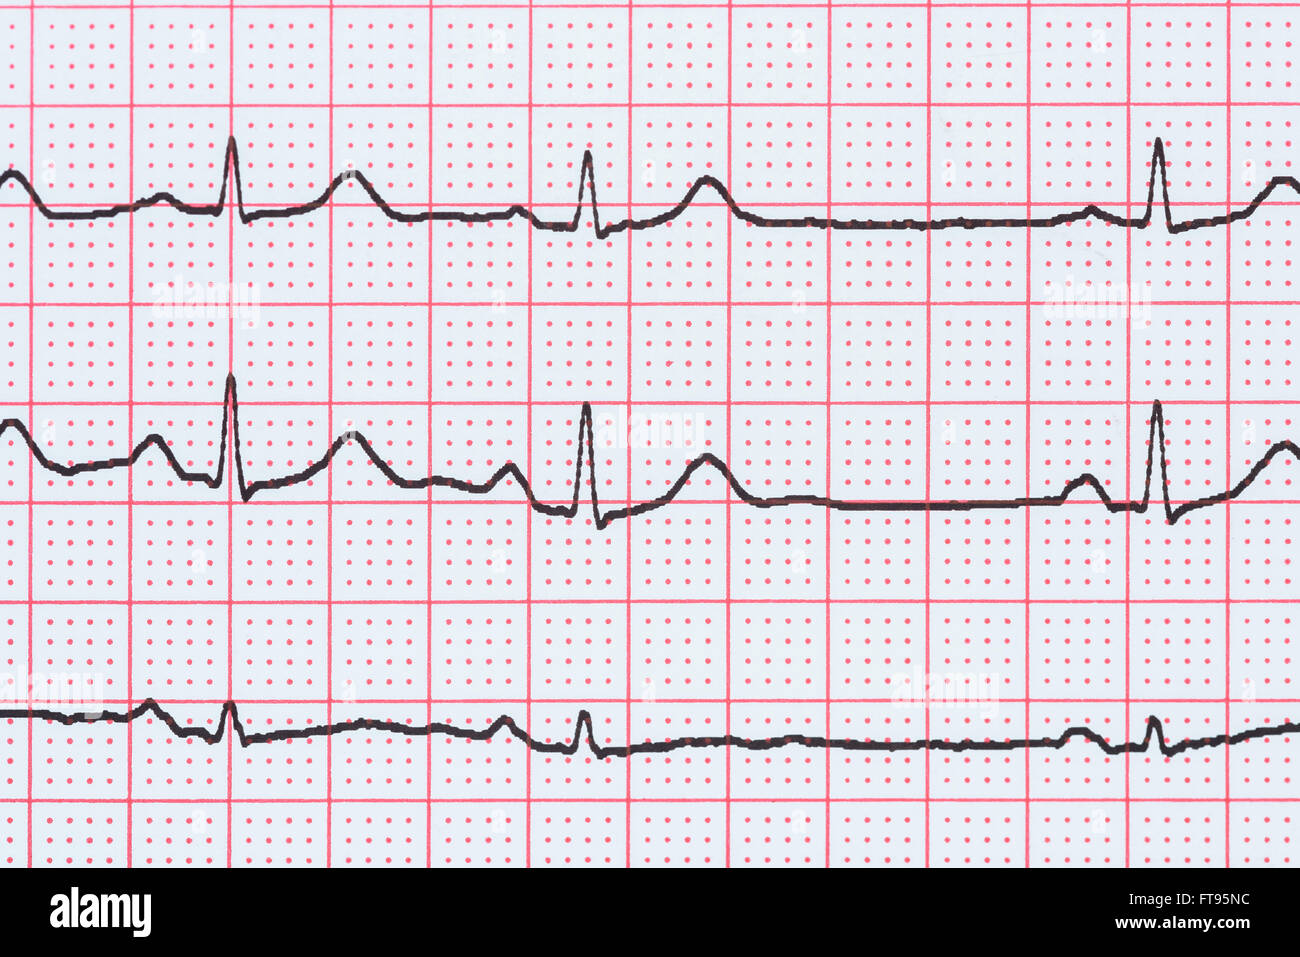 Sinusrhythmus Herz auf Elektrokardiogramm Rekord Papier zeigt normale P-Welle, PR und QT-Intervall und QRS-Komplex Stockfoto